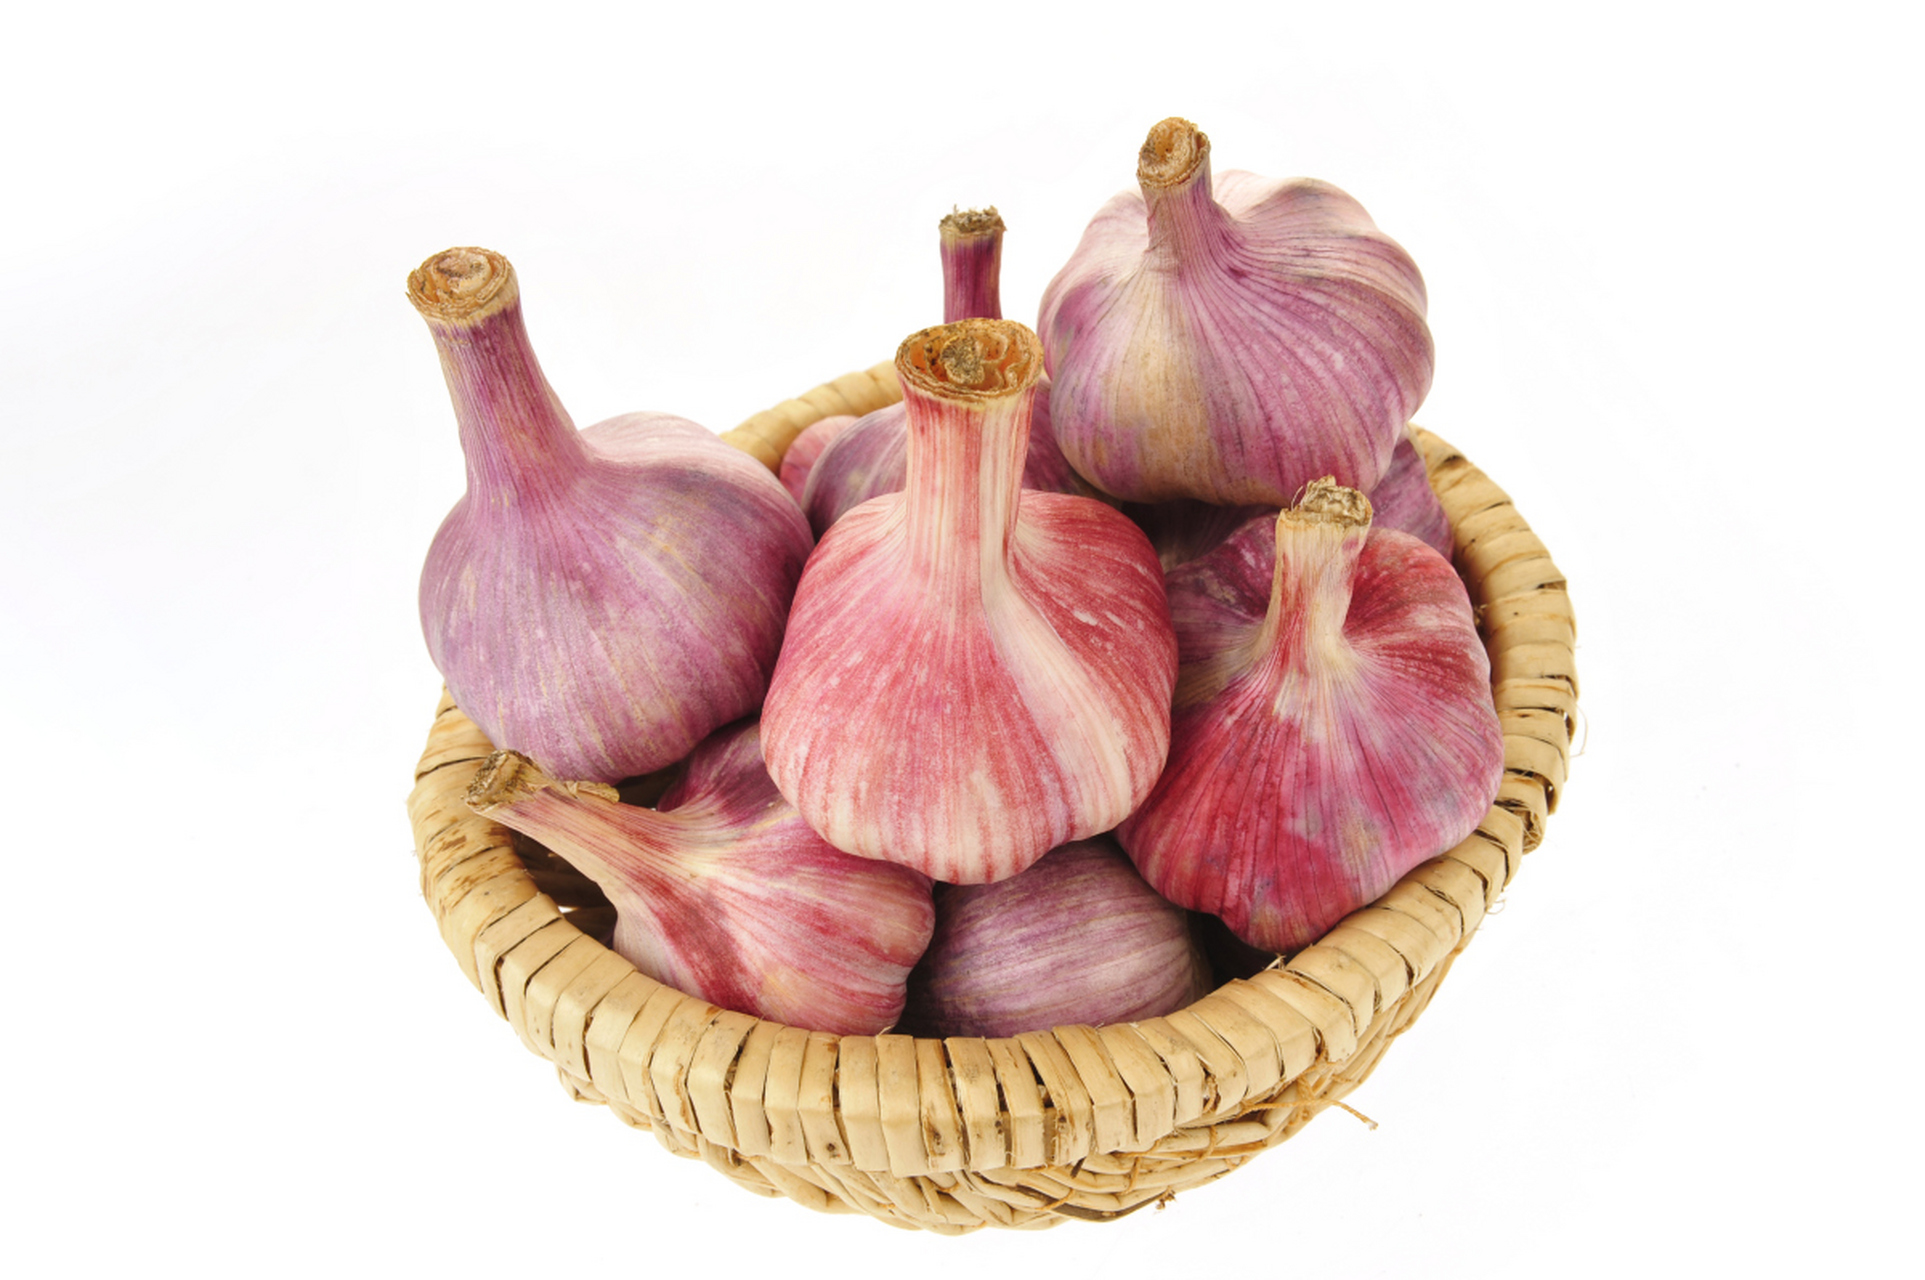 宝坻红皮大蒜,不只是调味,更是天津的文化符号 宝坻红皮大蒜,这个听